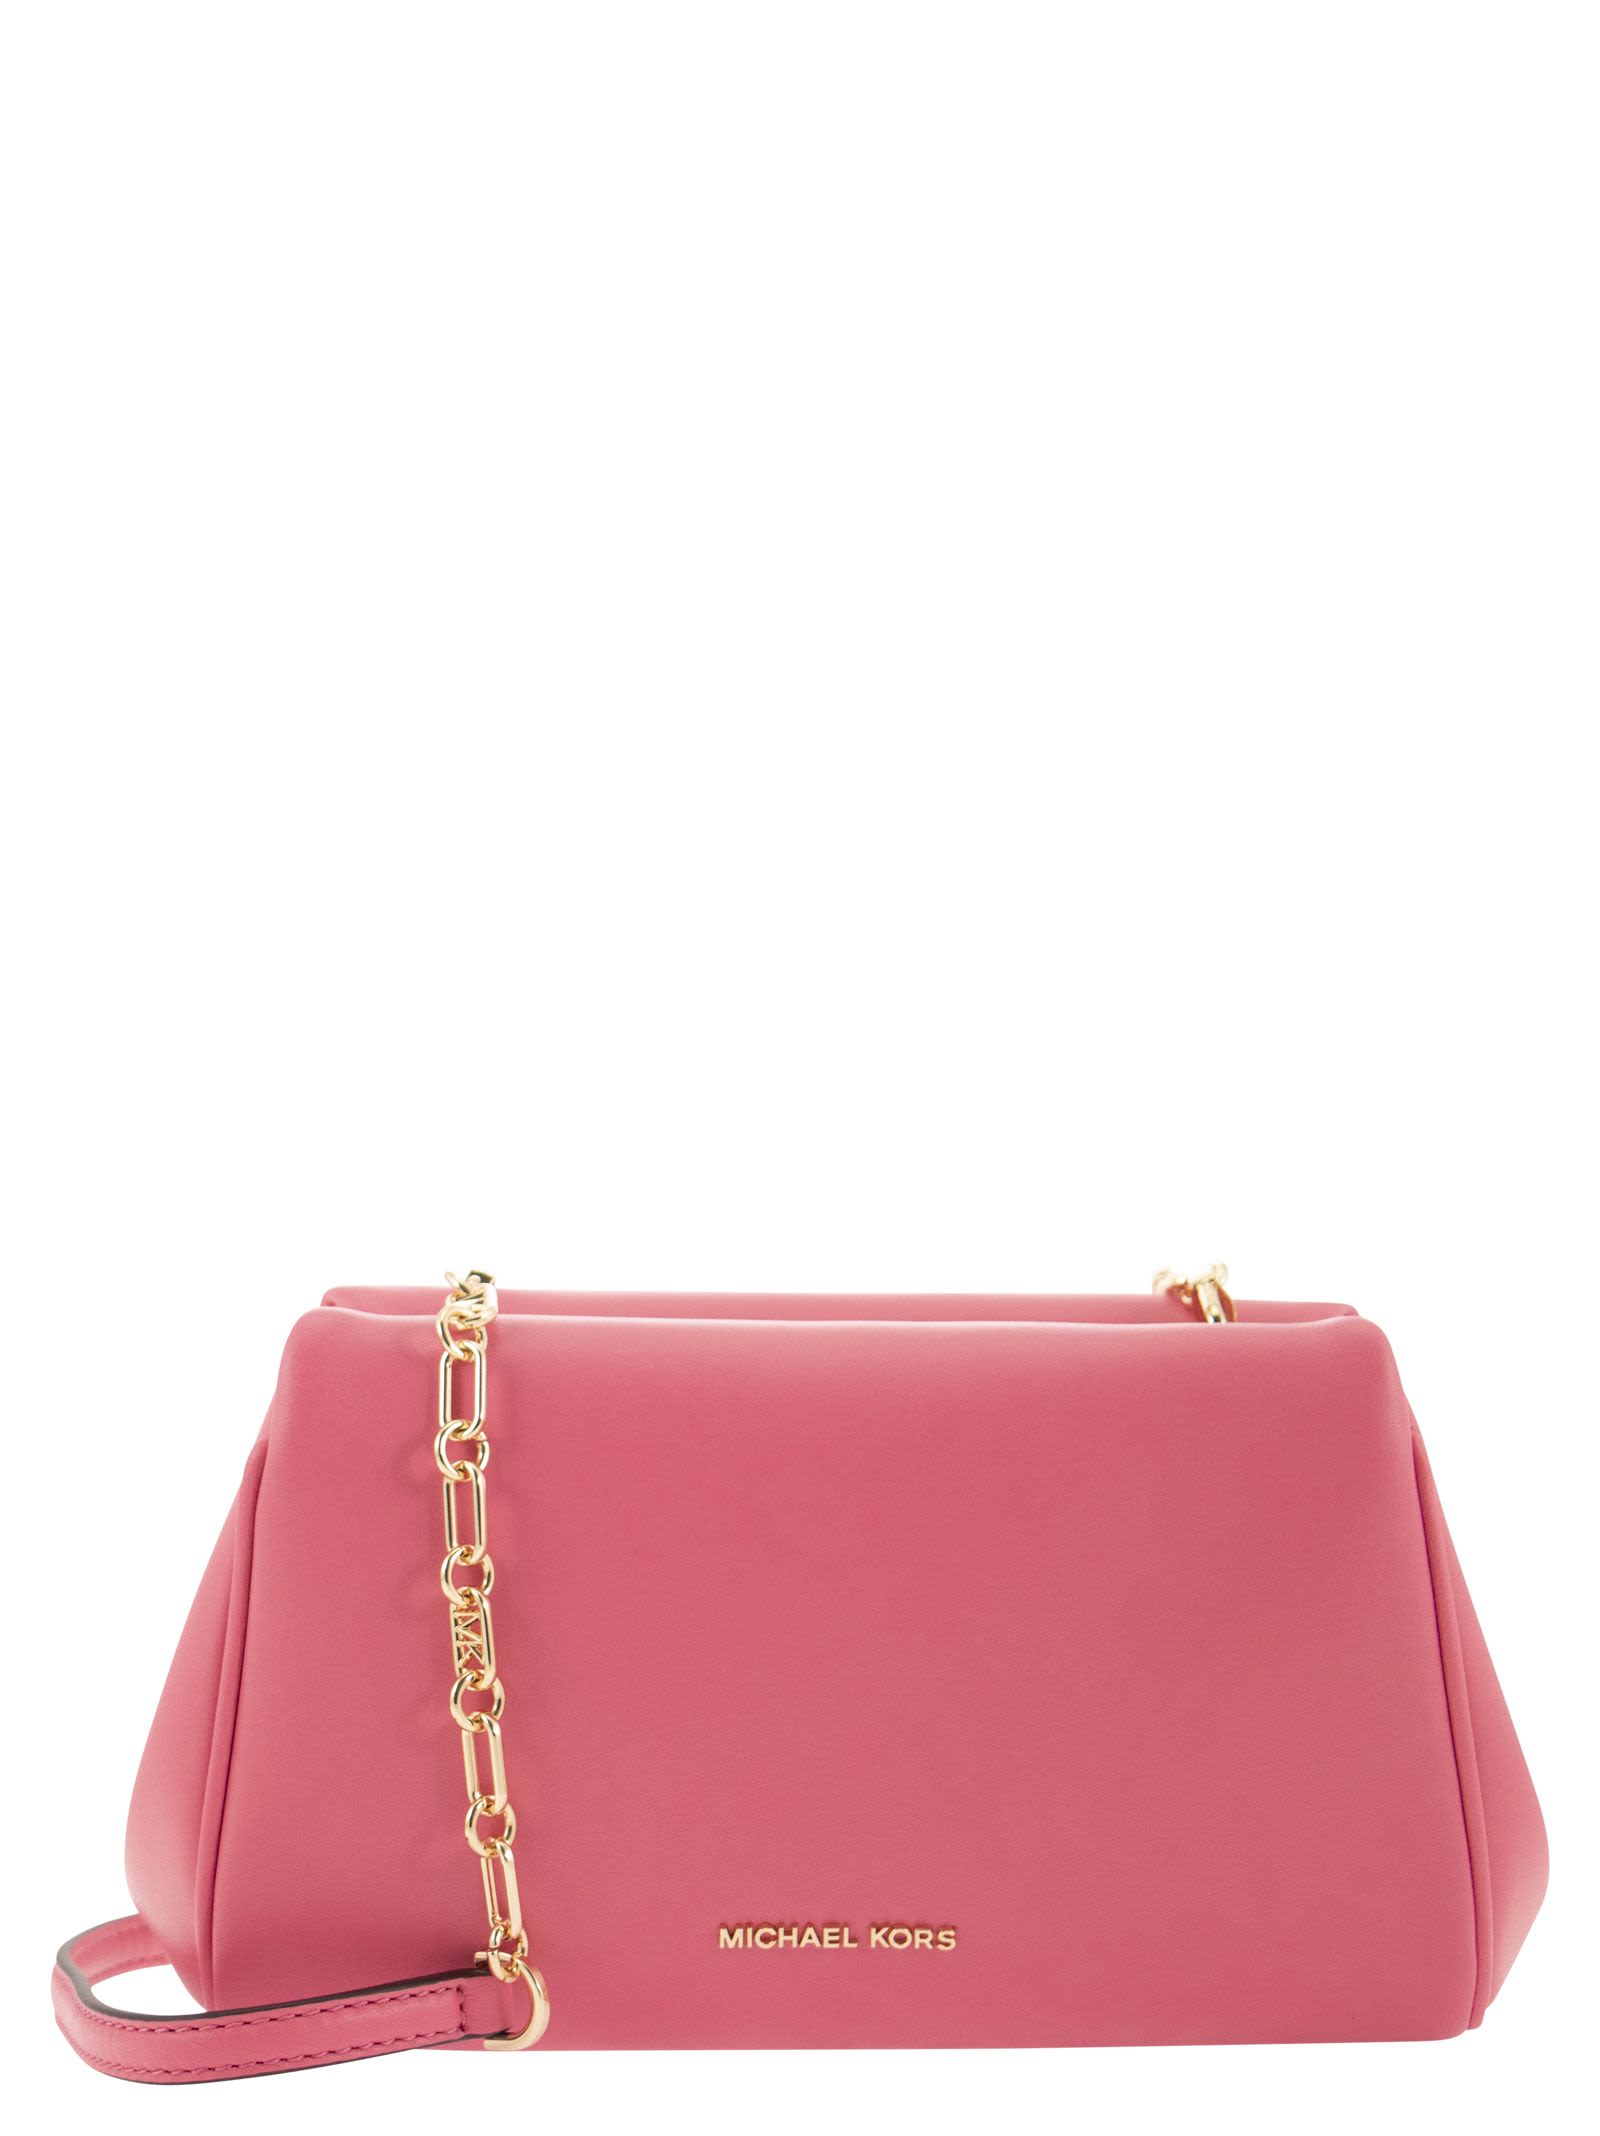 Michael Kors Belle - Shoulder Bag In Pink